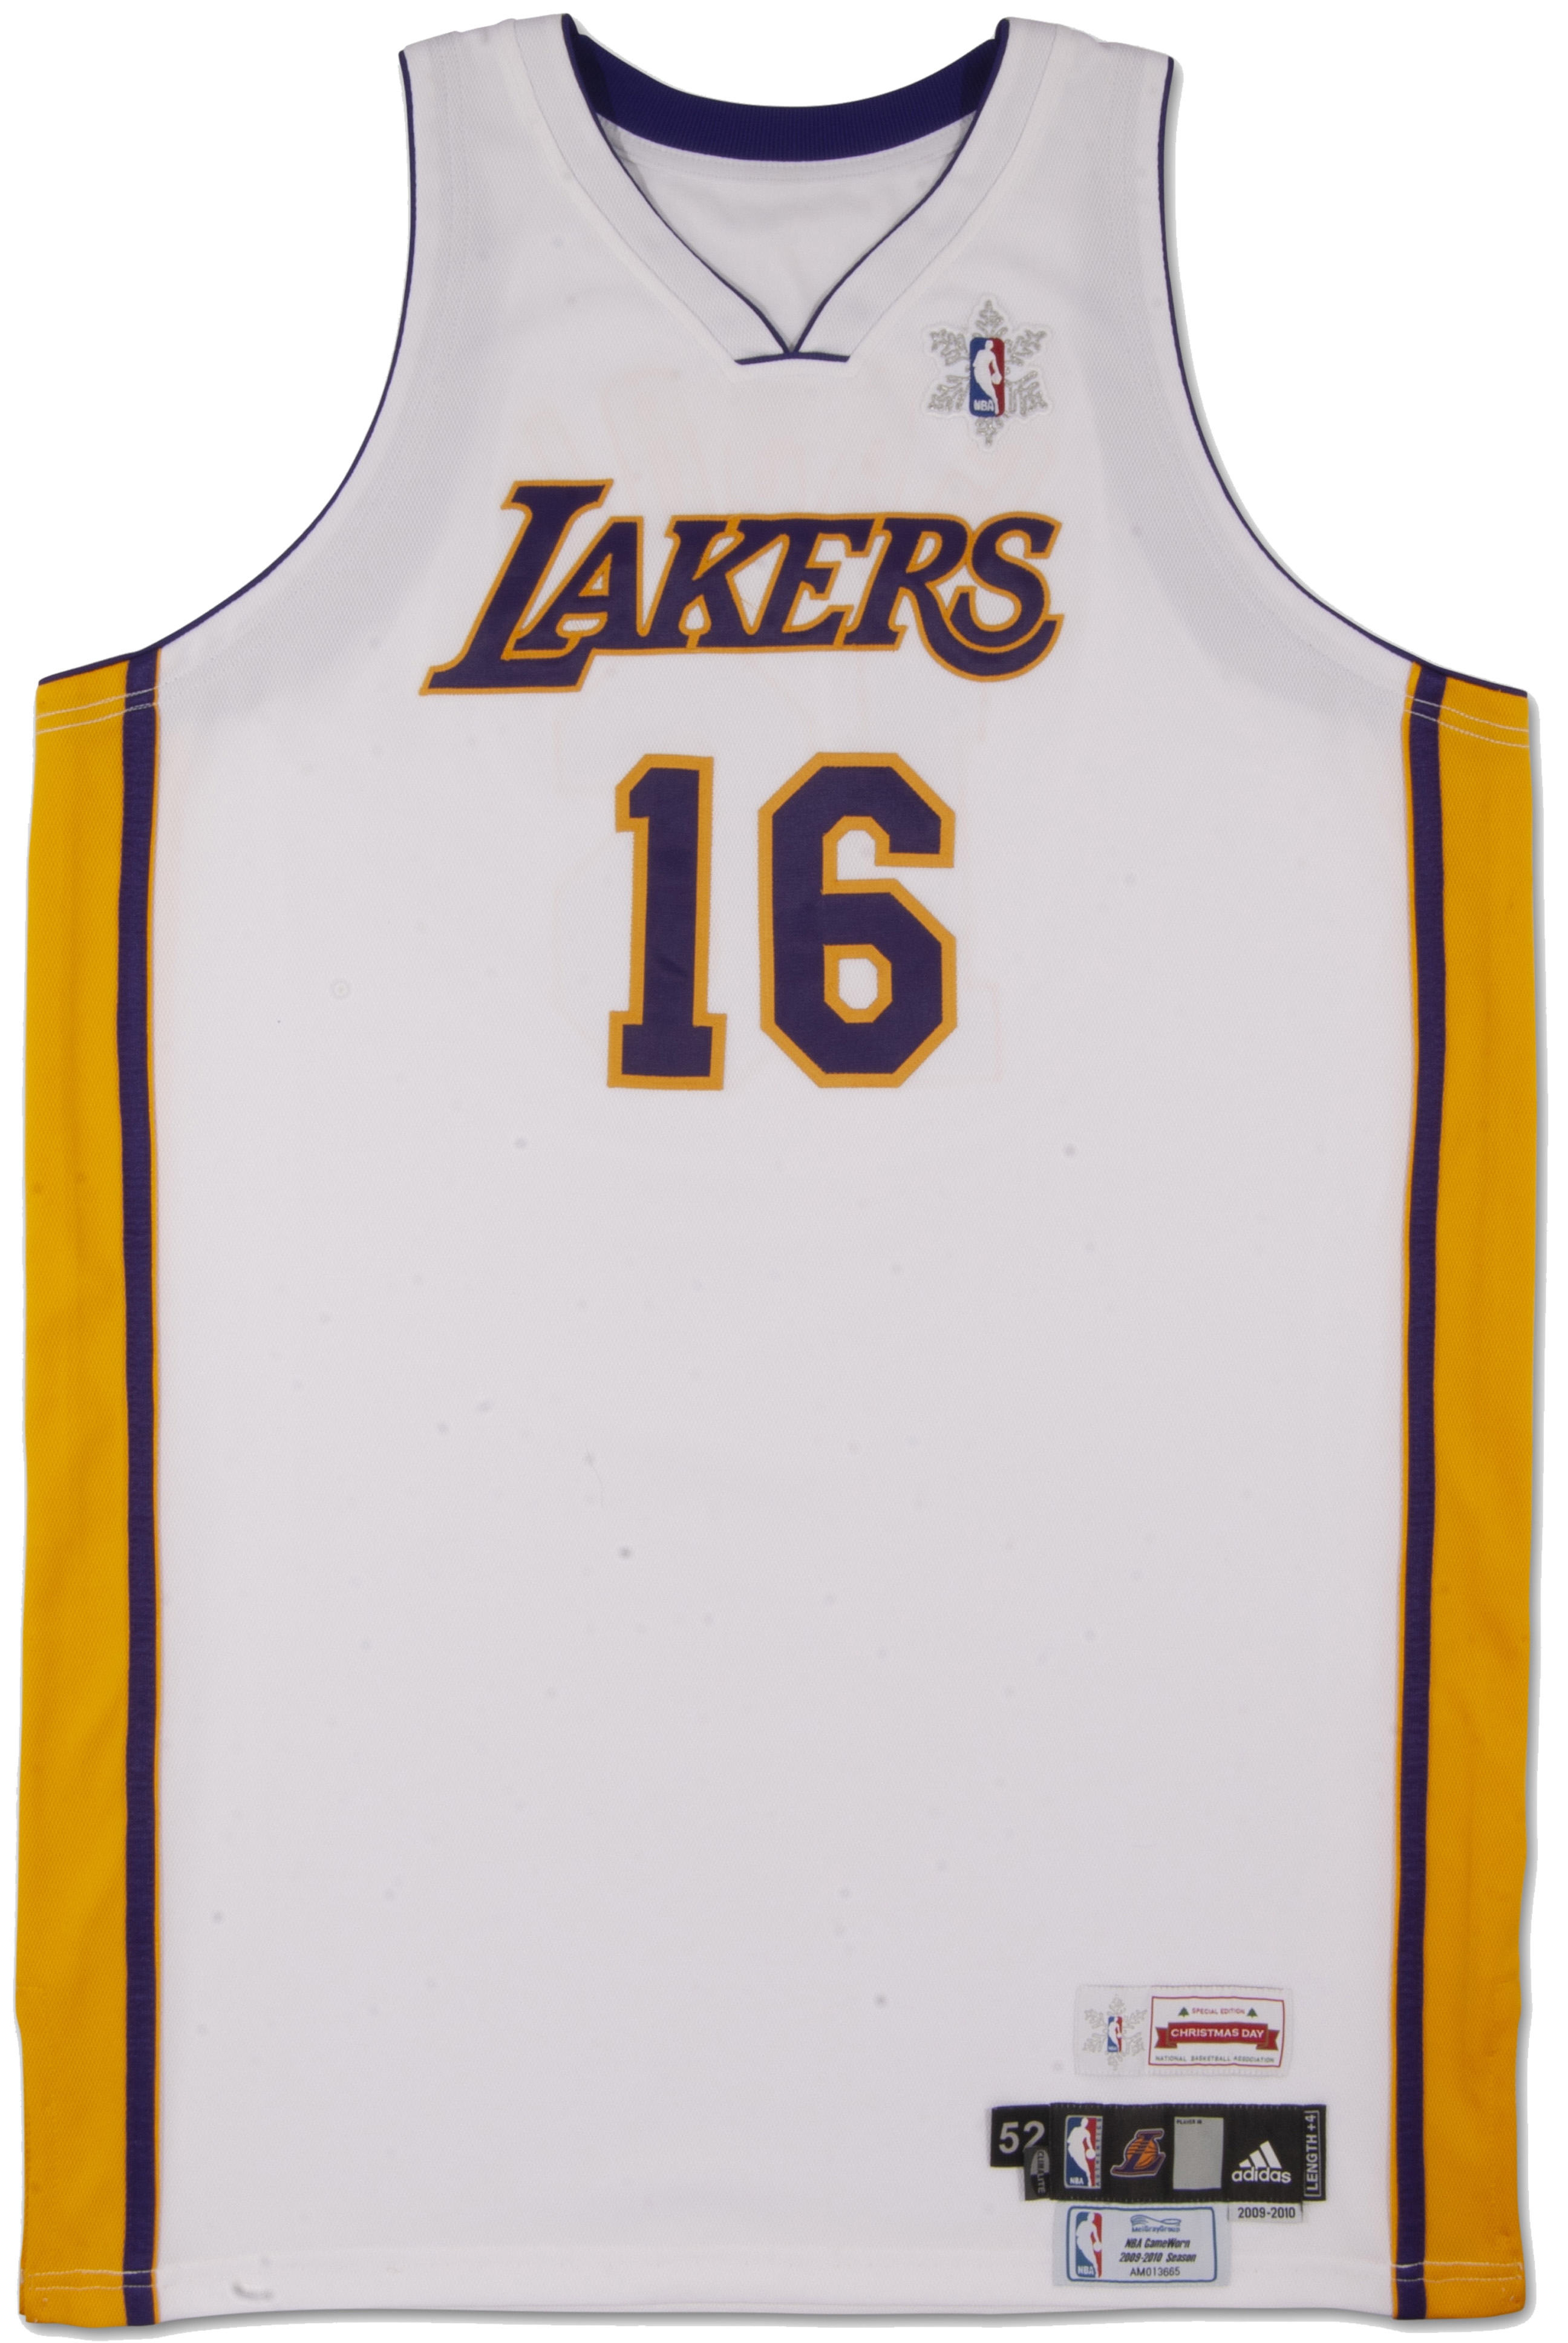 Adidas 2009 Lakers Ring Leader Kobe Bryant NBA Champion t-shirt by